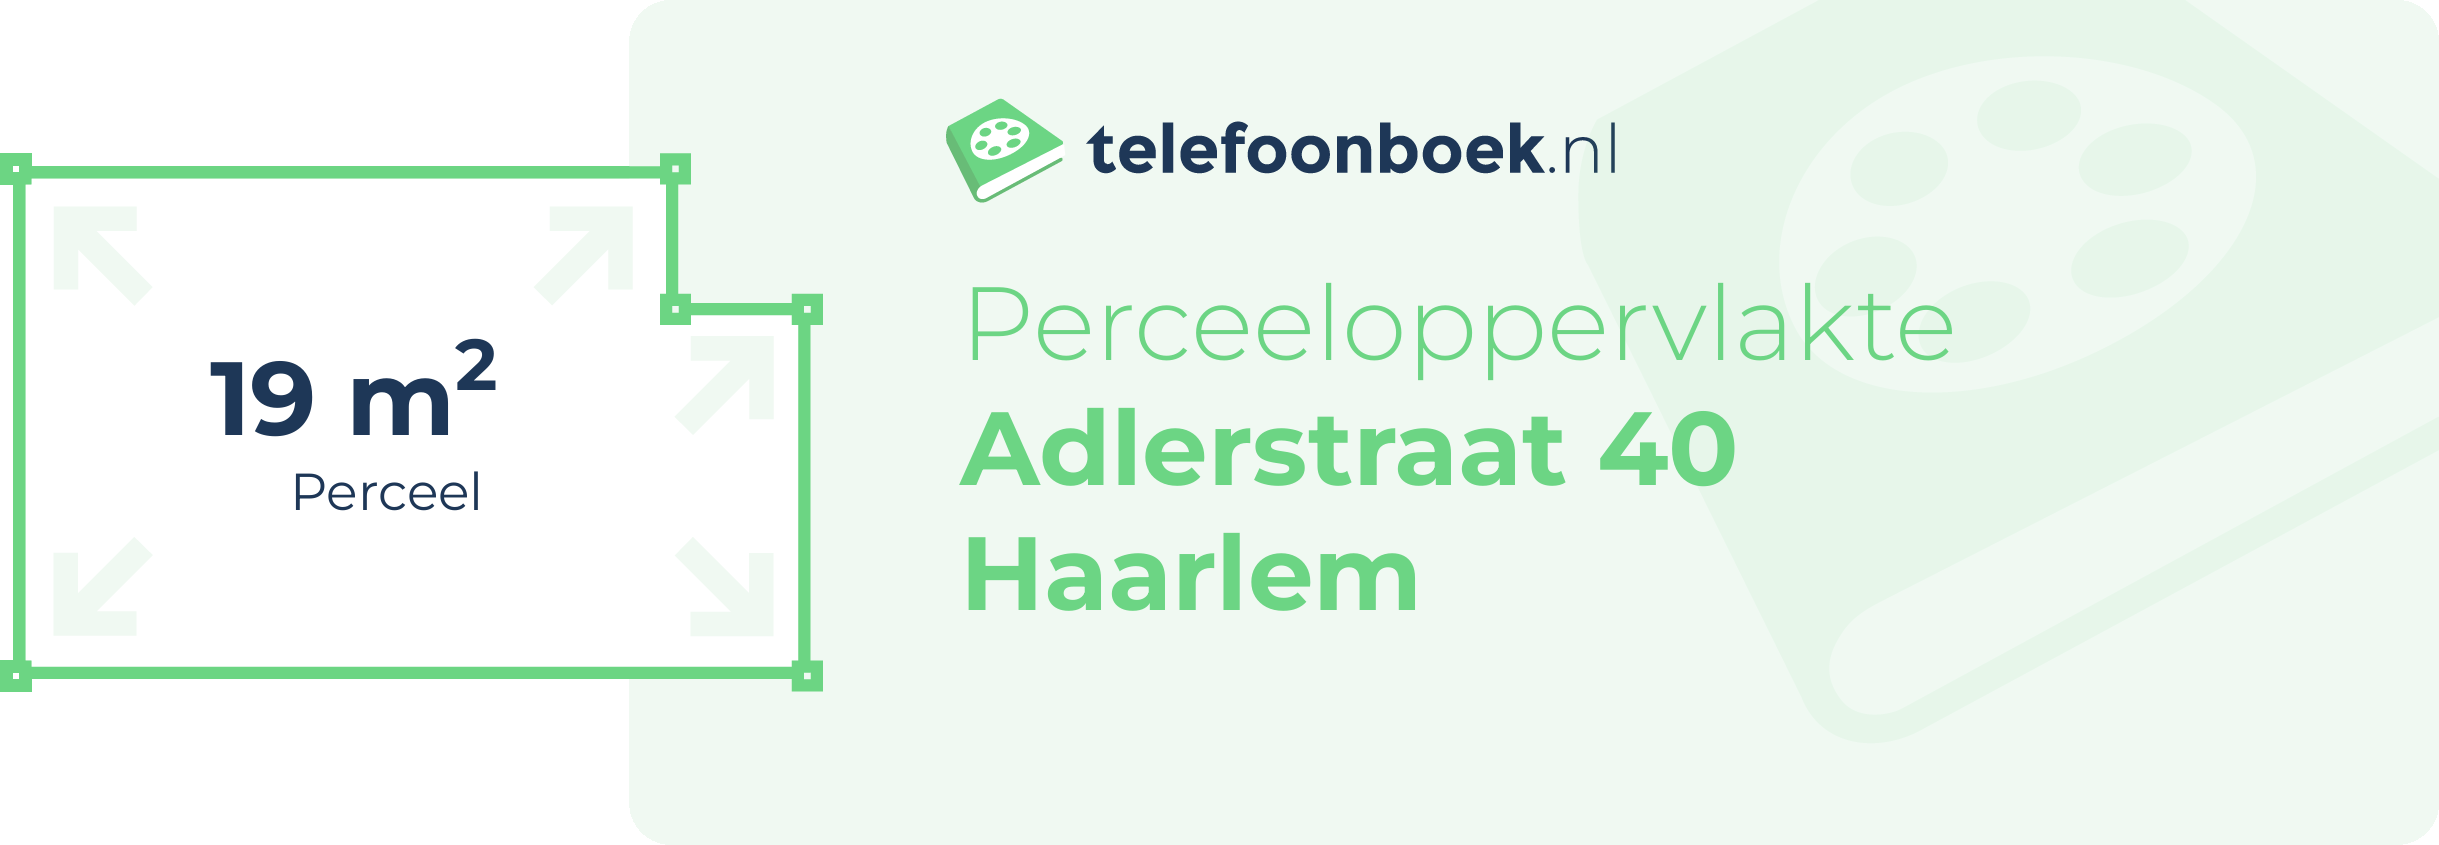 Perceeloppervlakte Adlerstraat 40 Haarlem